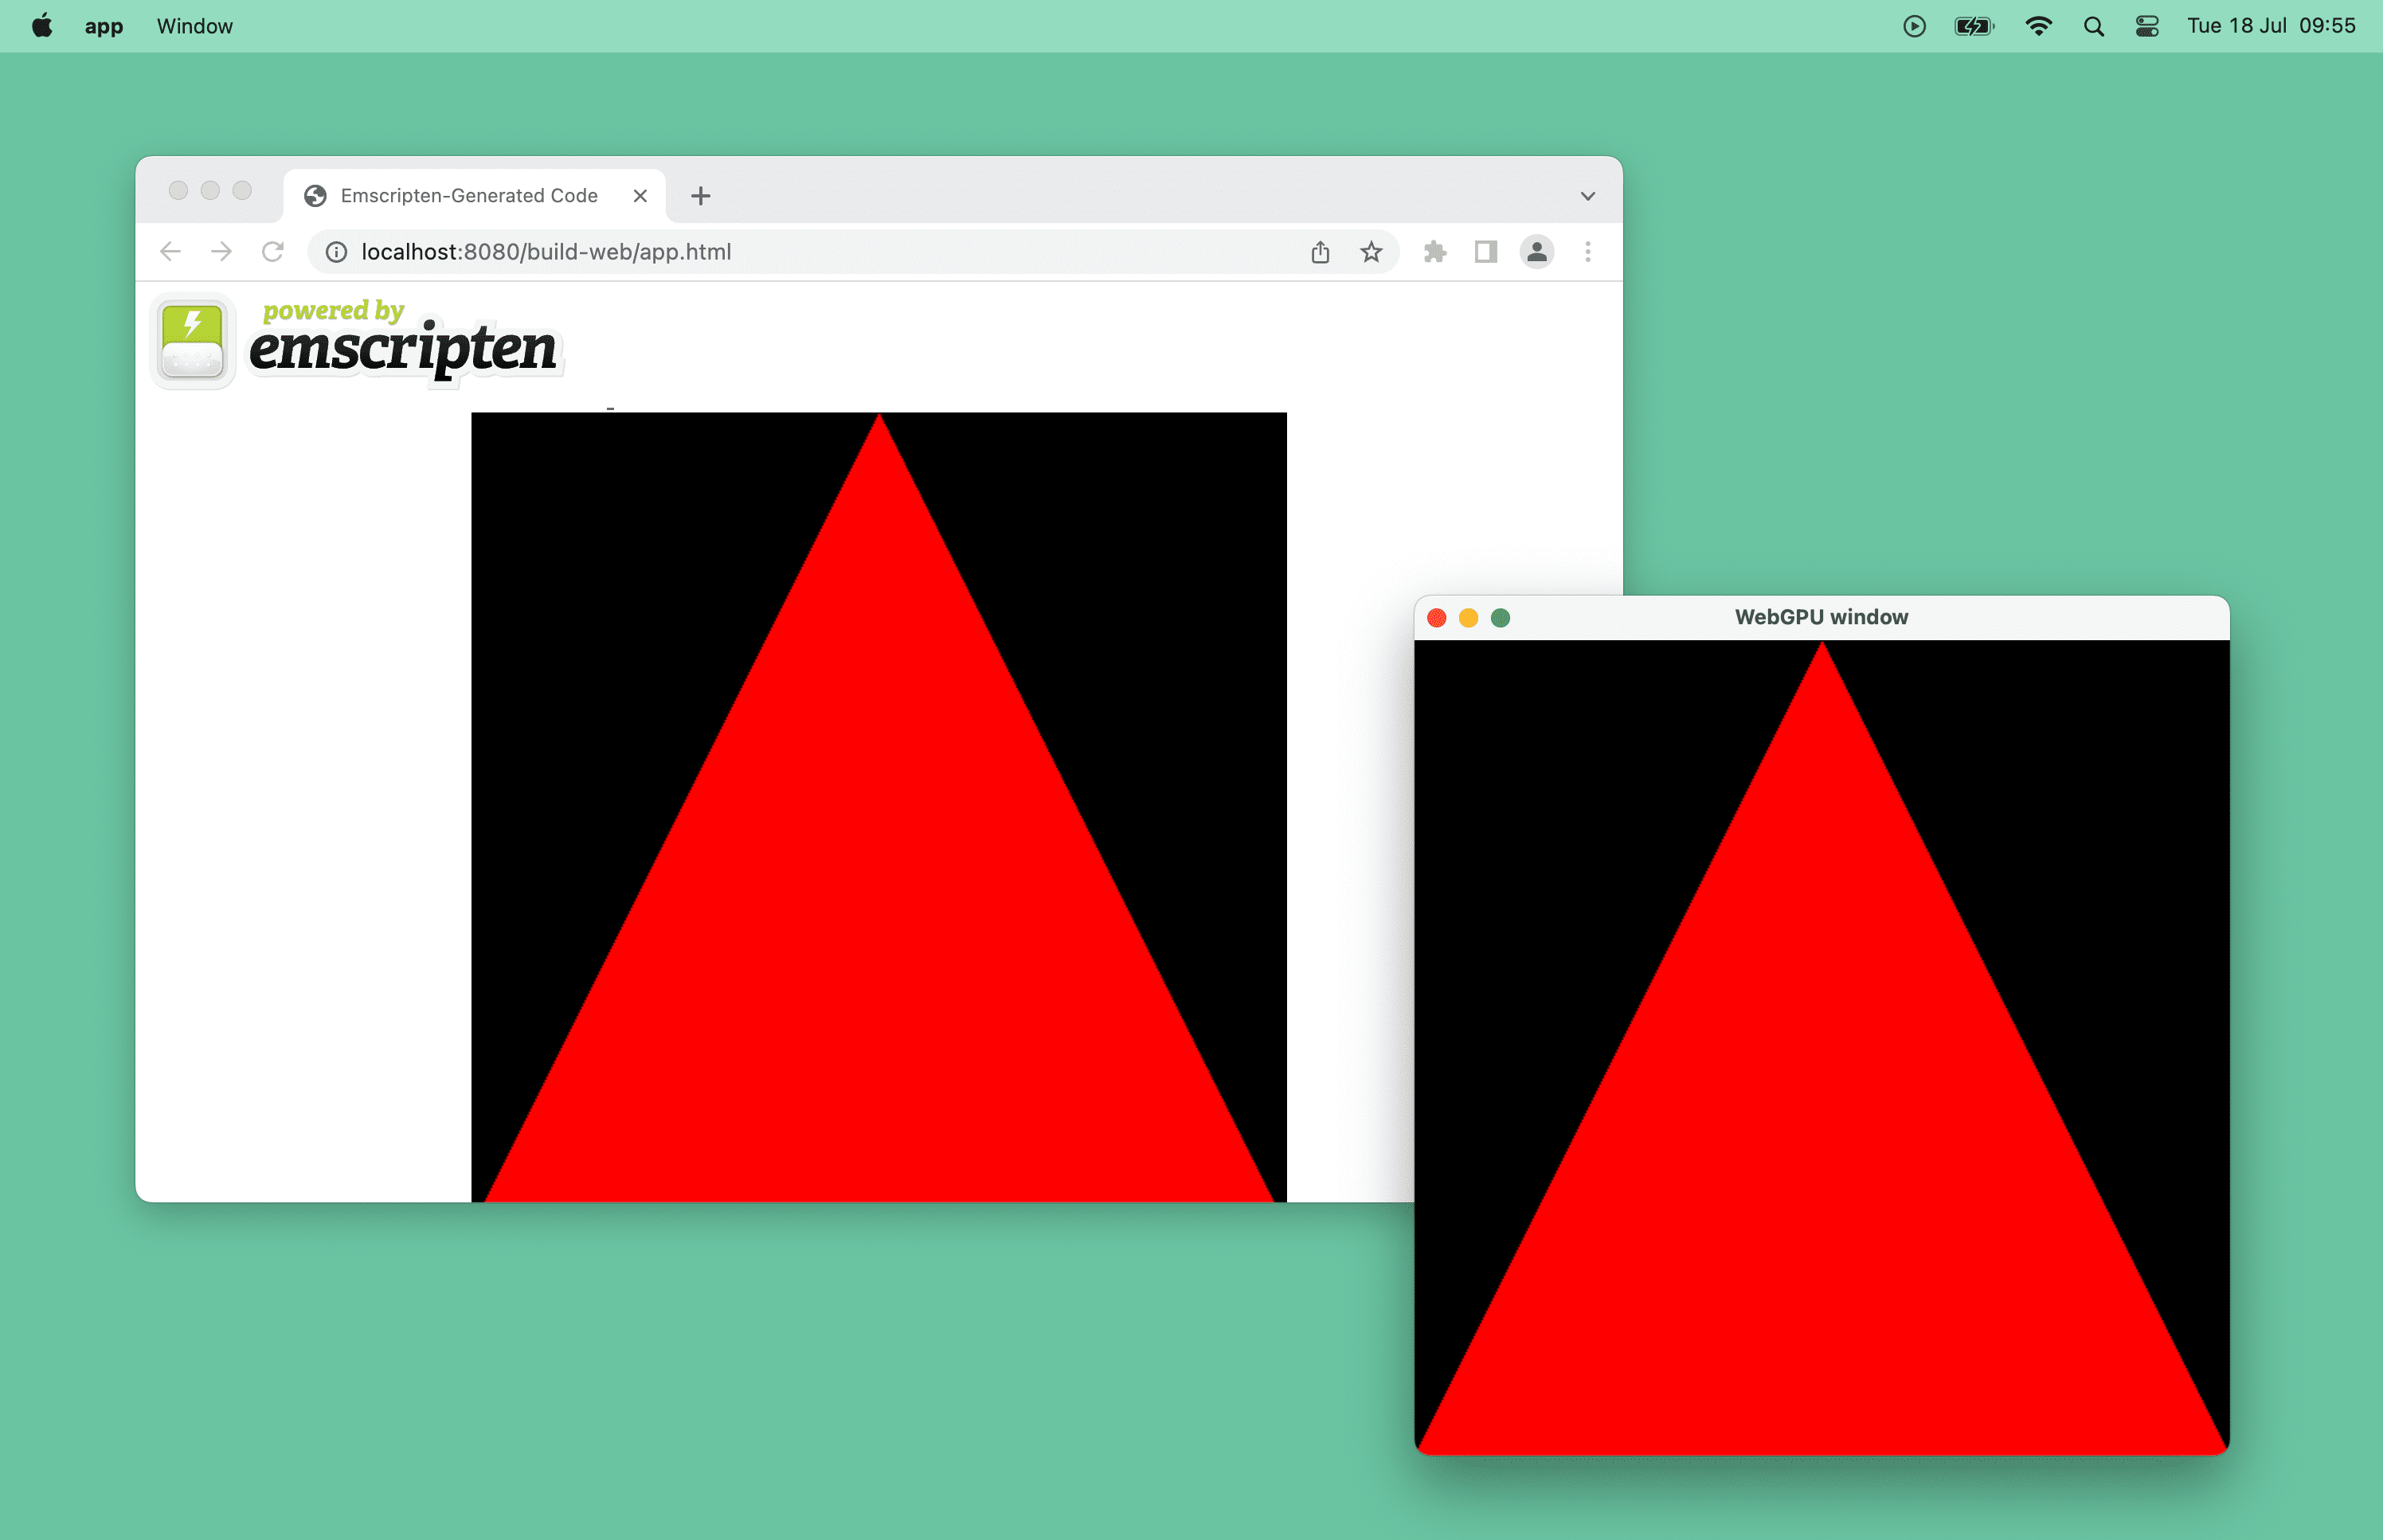 Screenshot segitiga merah yang didukung oleh WebGPU di jendela browser dan jendela desktop di macOS.